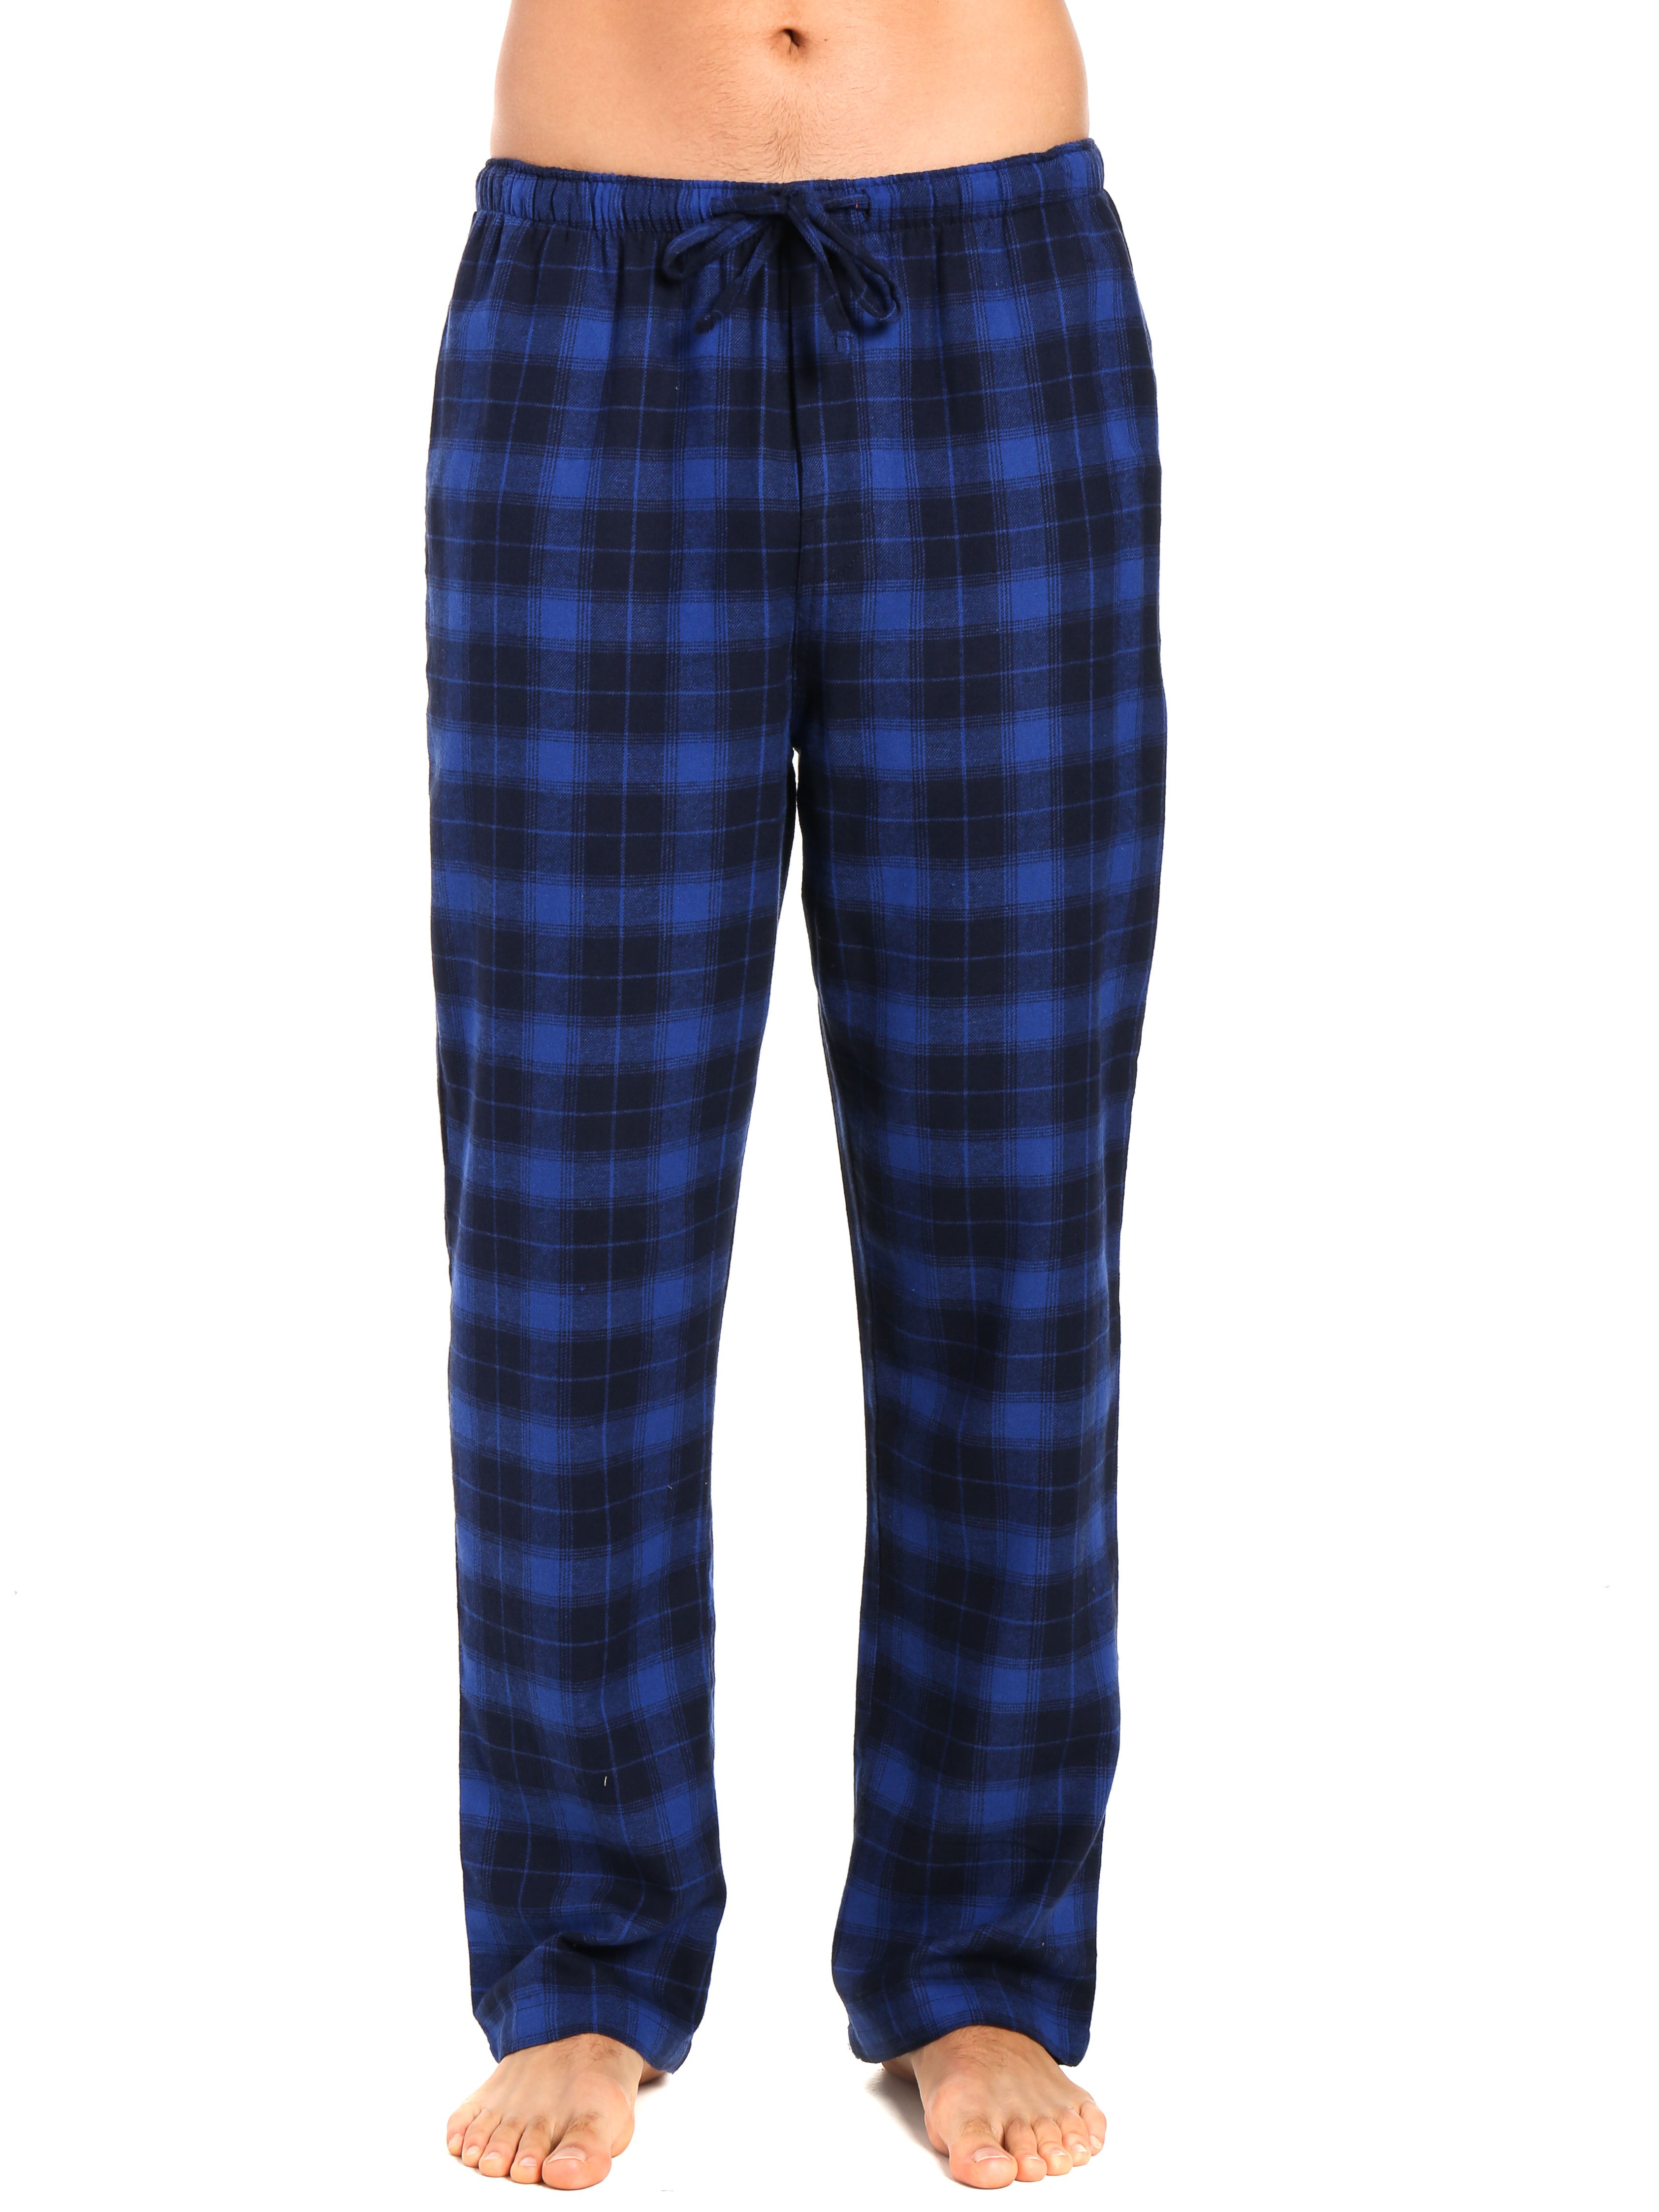 Men's 100% Cotton Flannel Lounge Pants - Plaid Blue-Navy – FlannelPeople